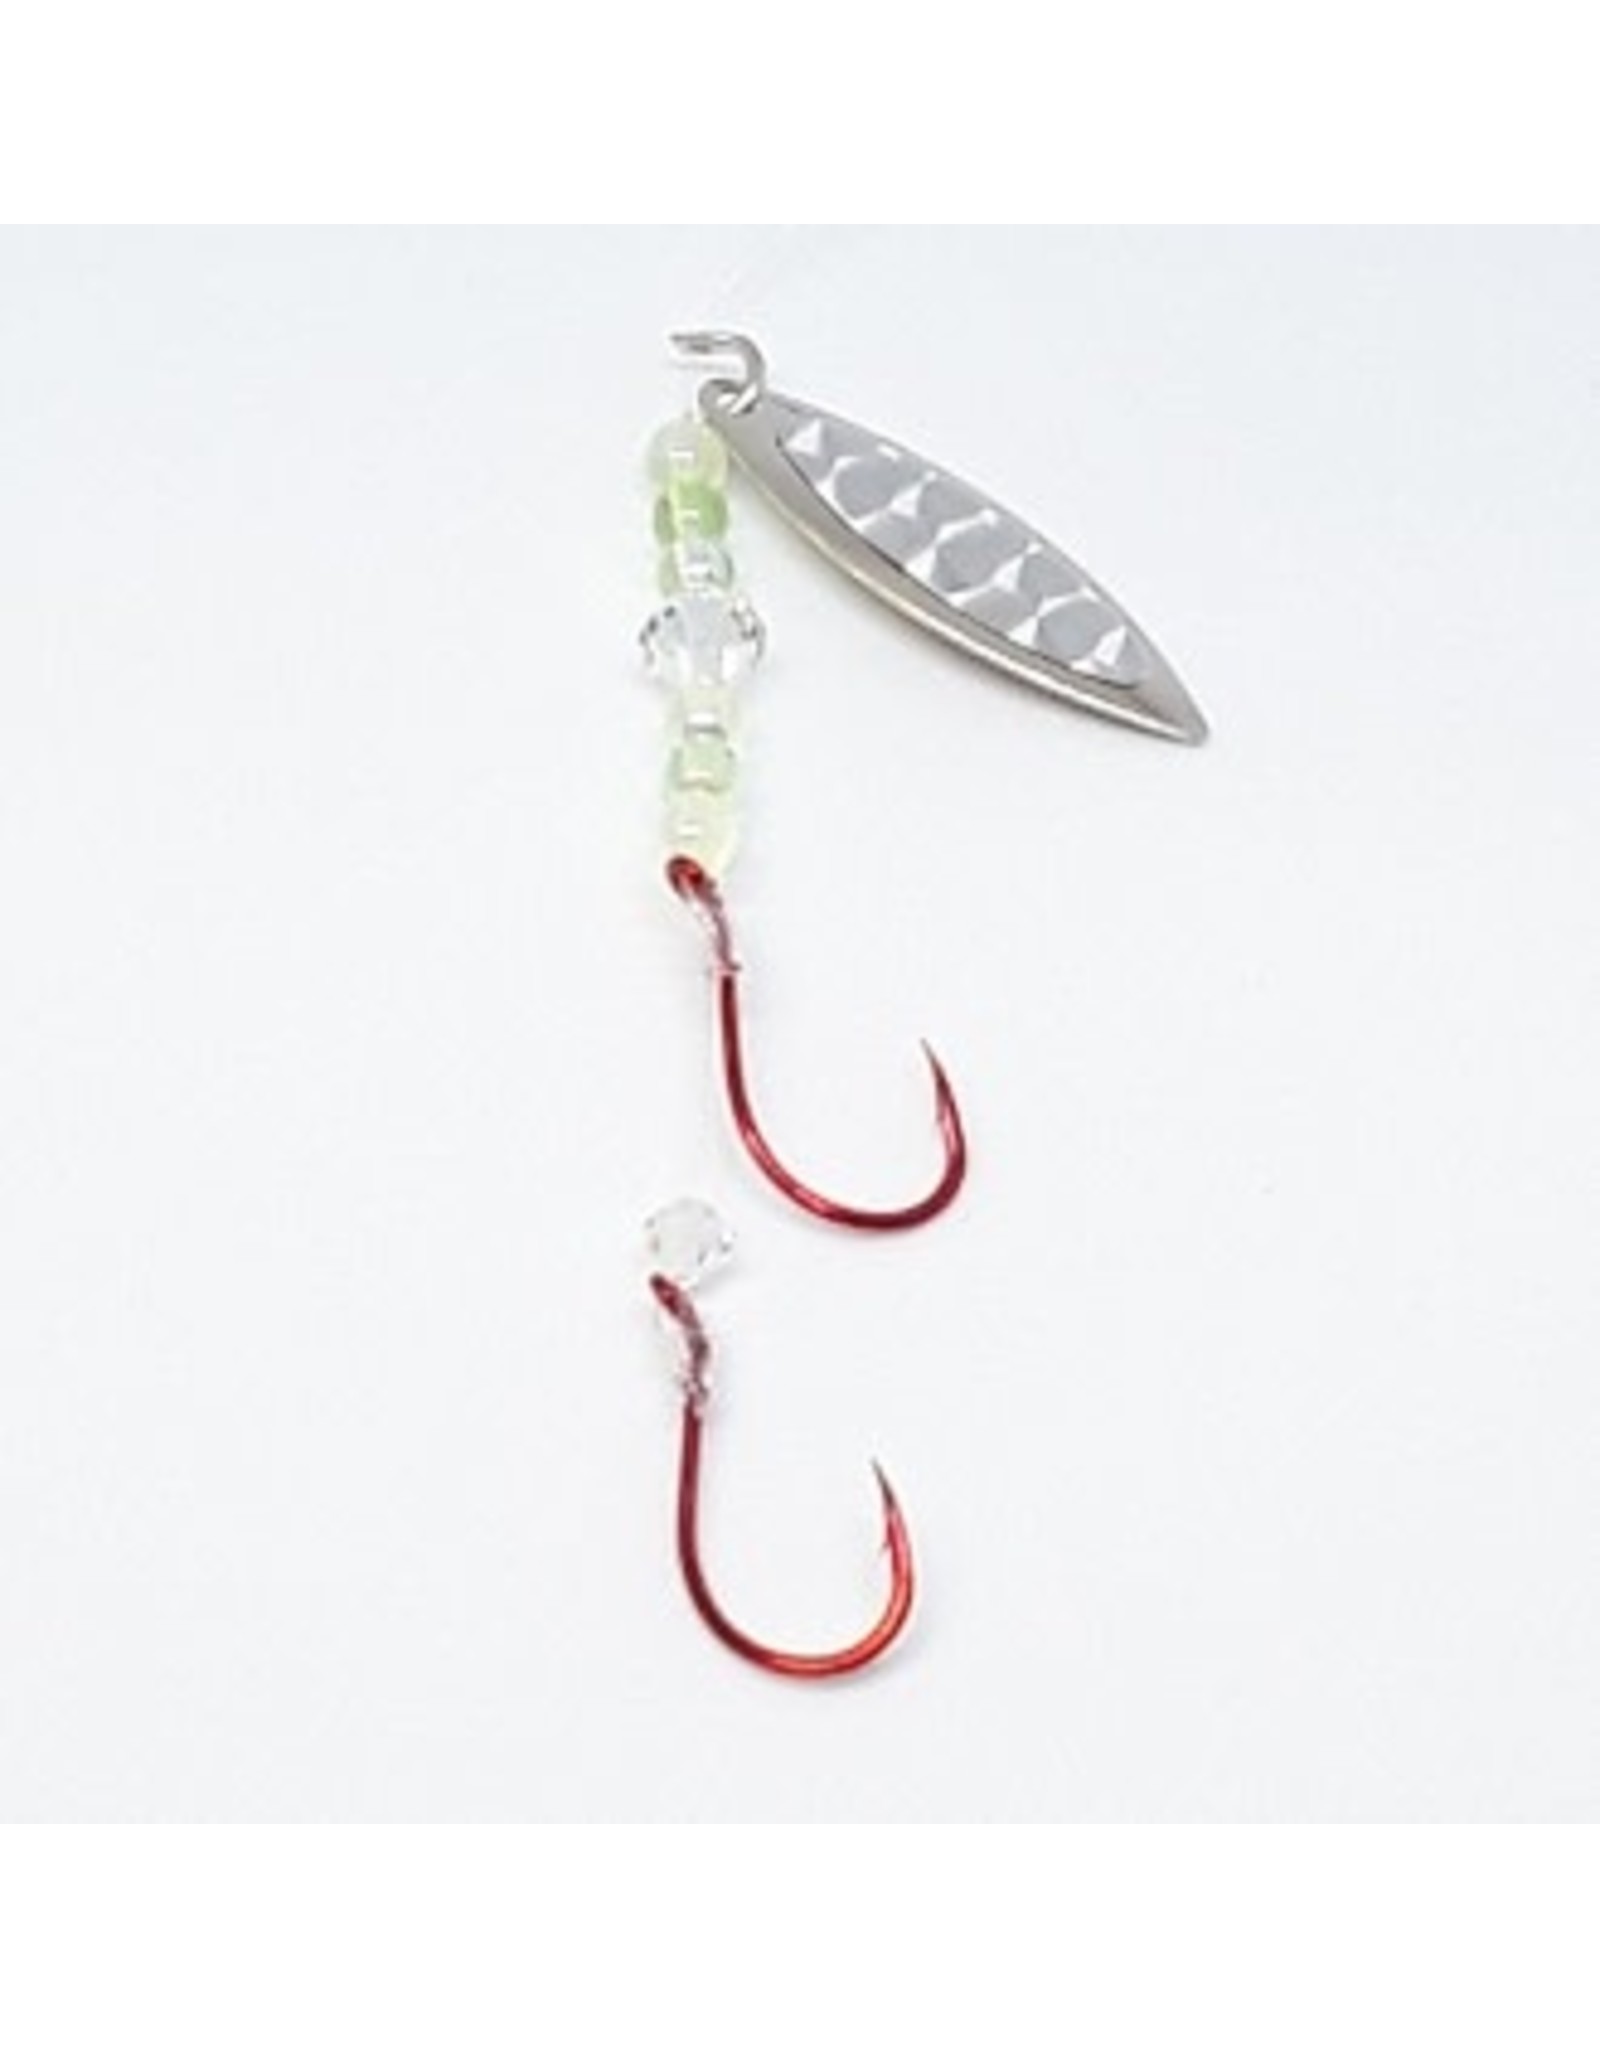 Kokabow Fishing Tackle Spinner - Silver Bullet